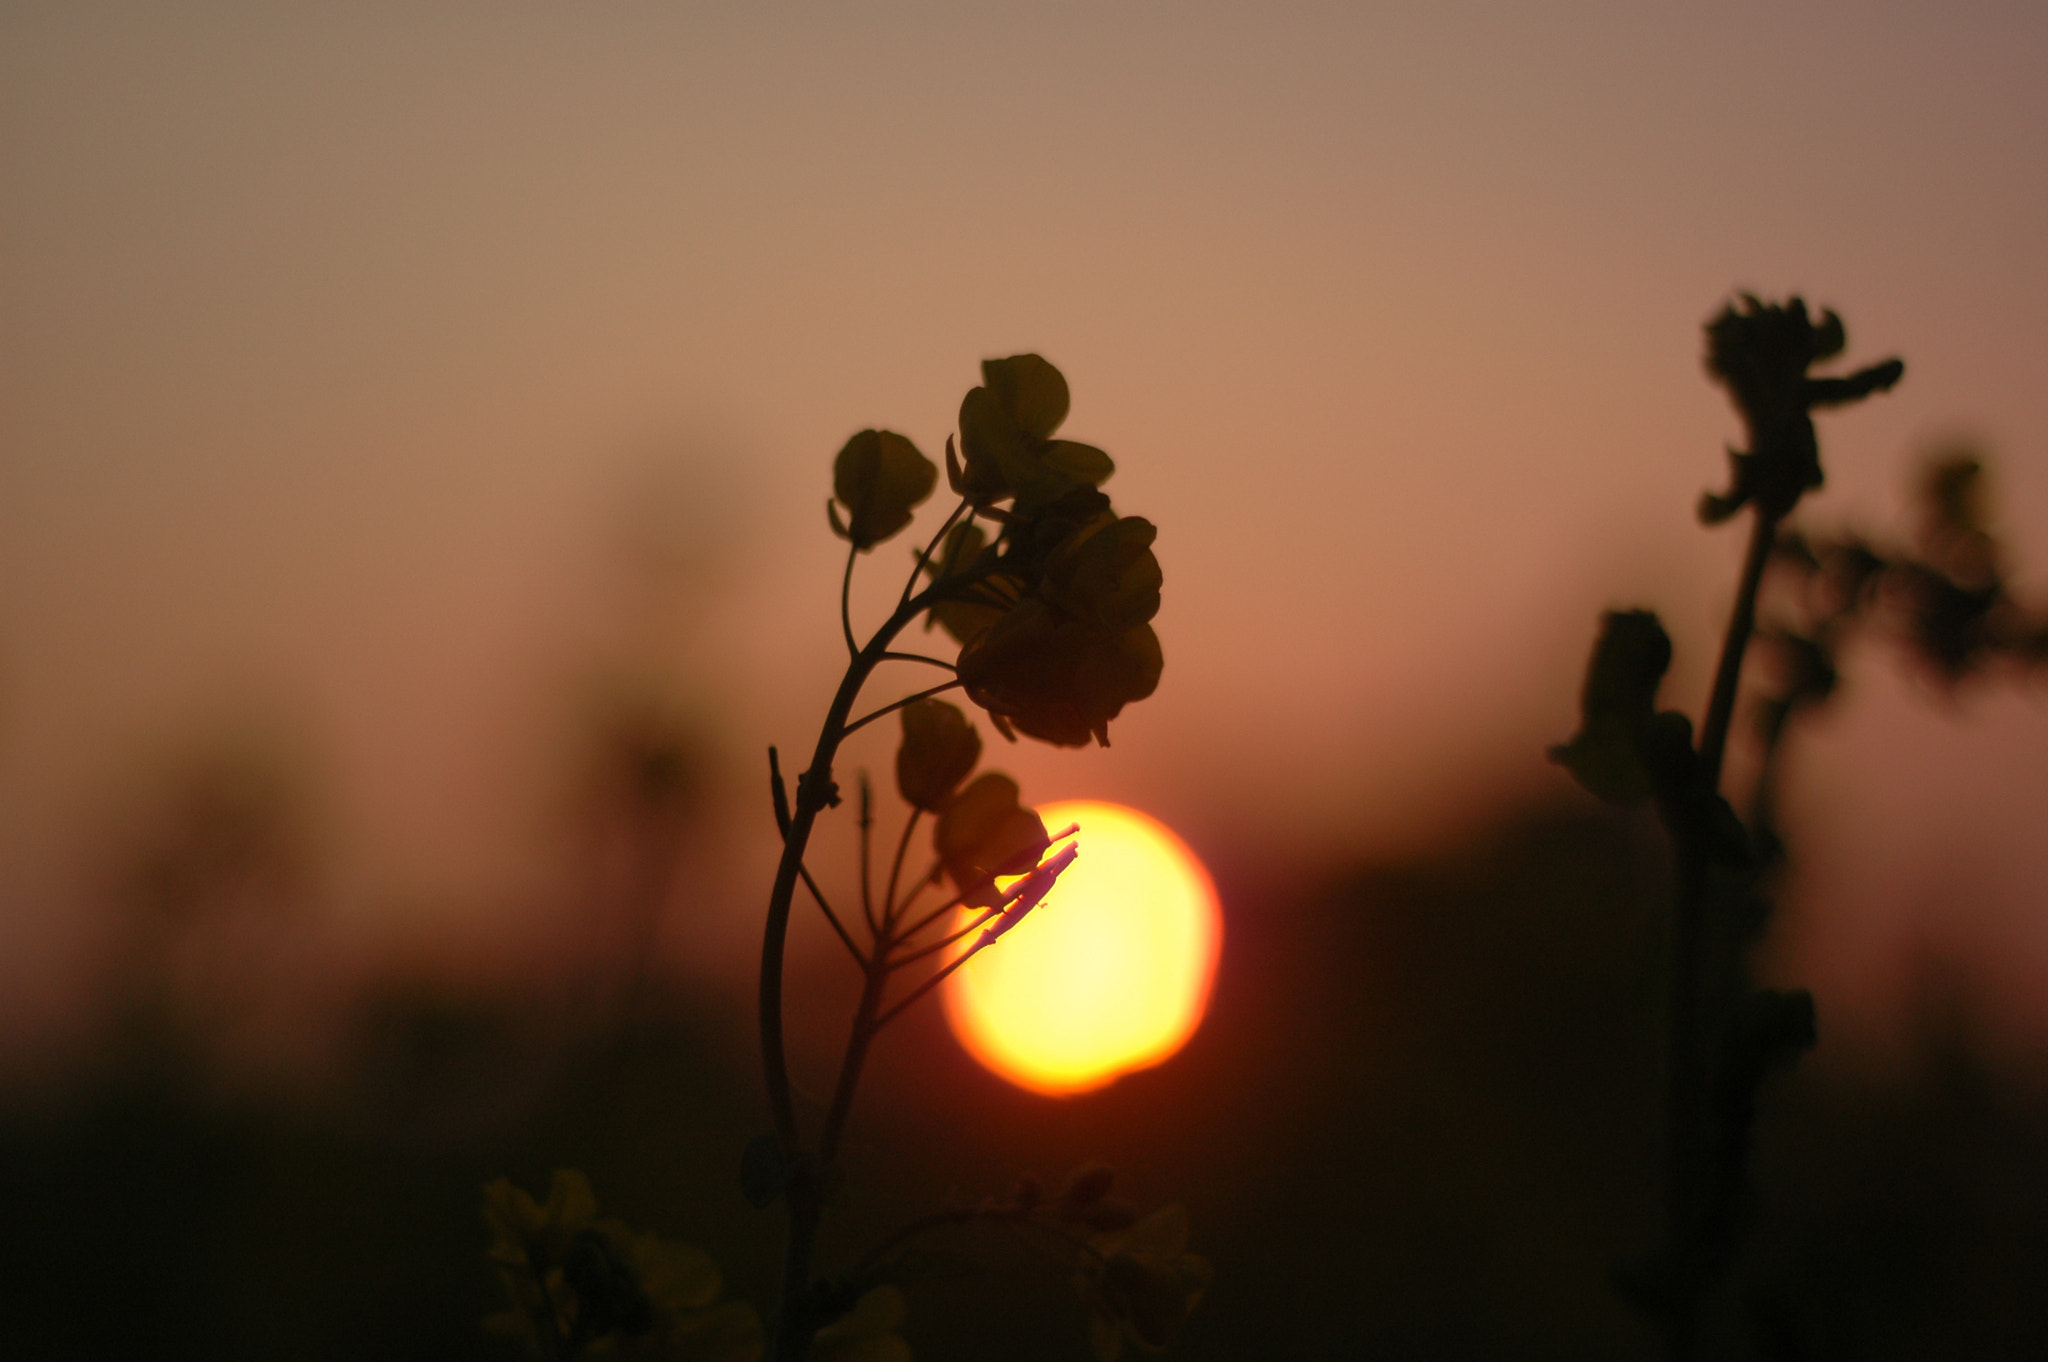 Nikon D70 + AF Nikkor 50mm f/1.8 N sample photo. Sunset / 日暮れの菜の花 photography